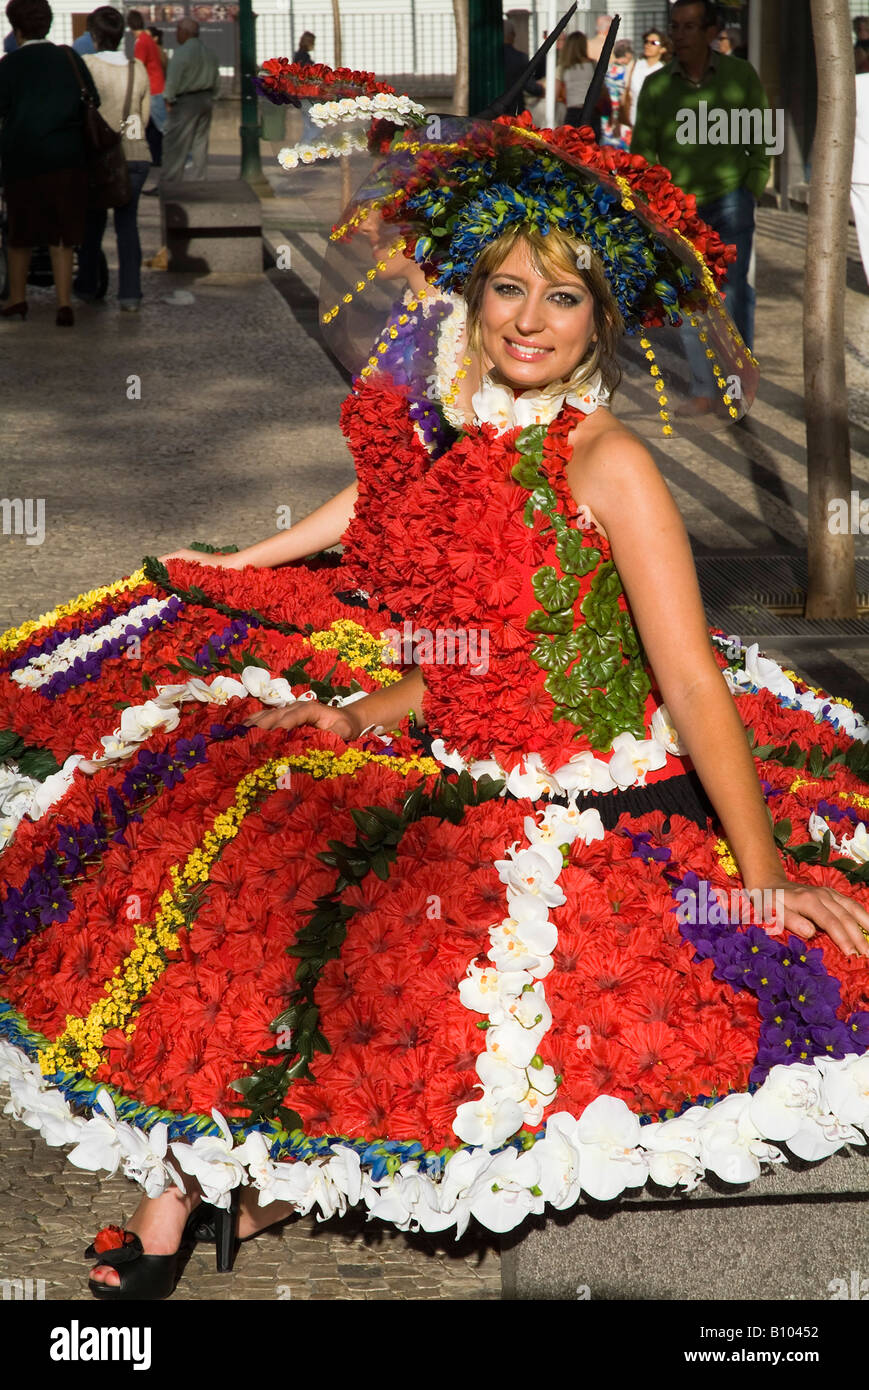 dh Flower Festival FUNCHAL MADEIRA Festival Mädchen in Blumenkostüm posiert Avenida Arriaga Stadt Straße Mädchen Kleid schöne Frau Stockfoto